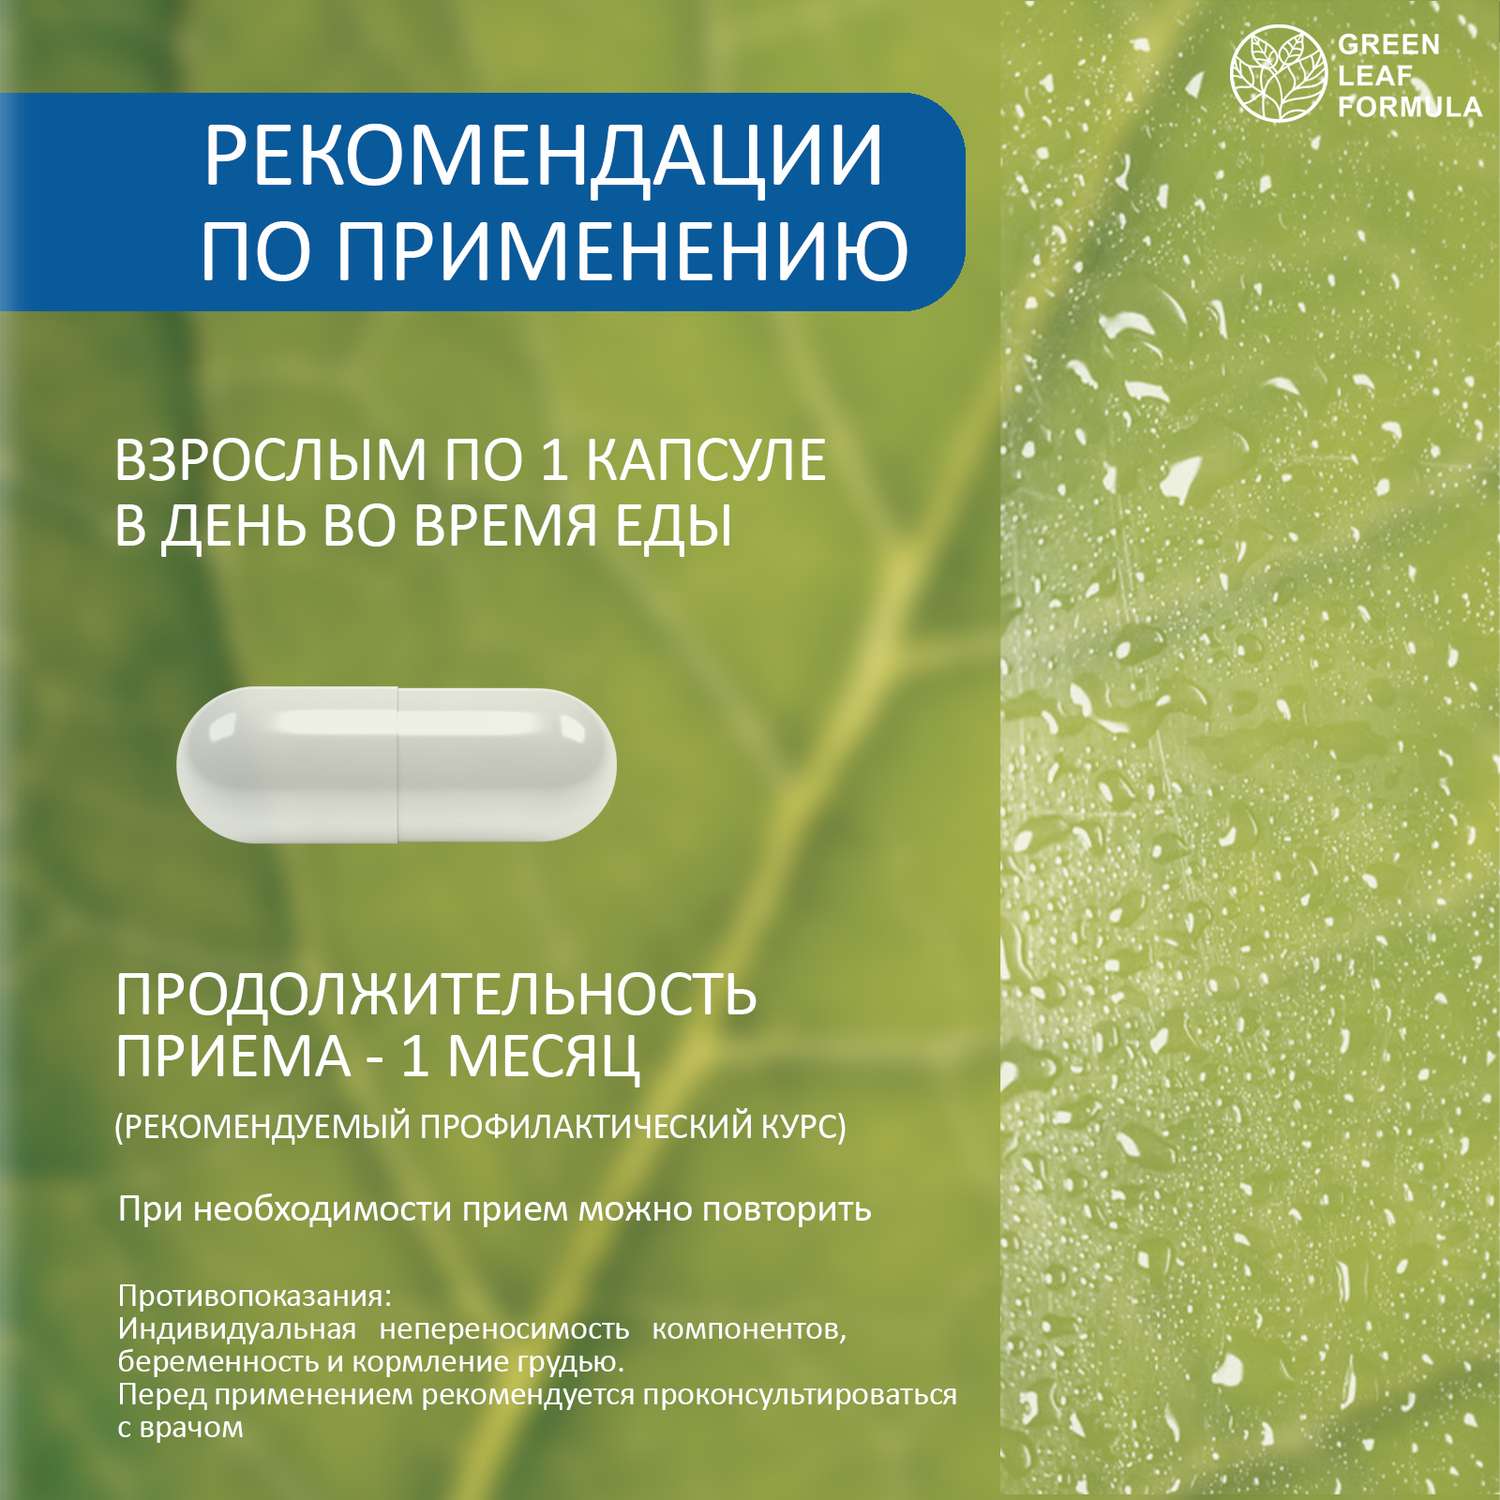 Таблетки от стресса депрессии Green Leaf Formula витамины для мозга нервной системы для памяти и настроения триптофан и 5 НТР 2 банки - фото 9